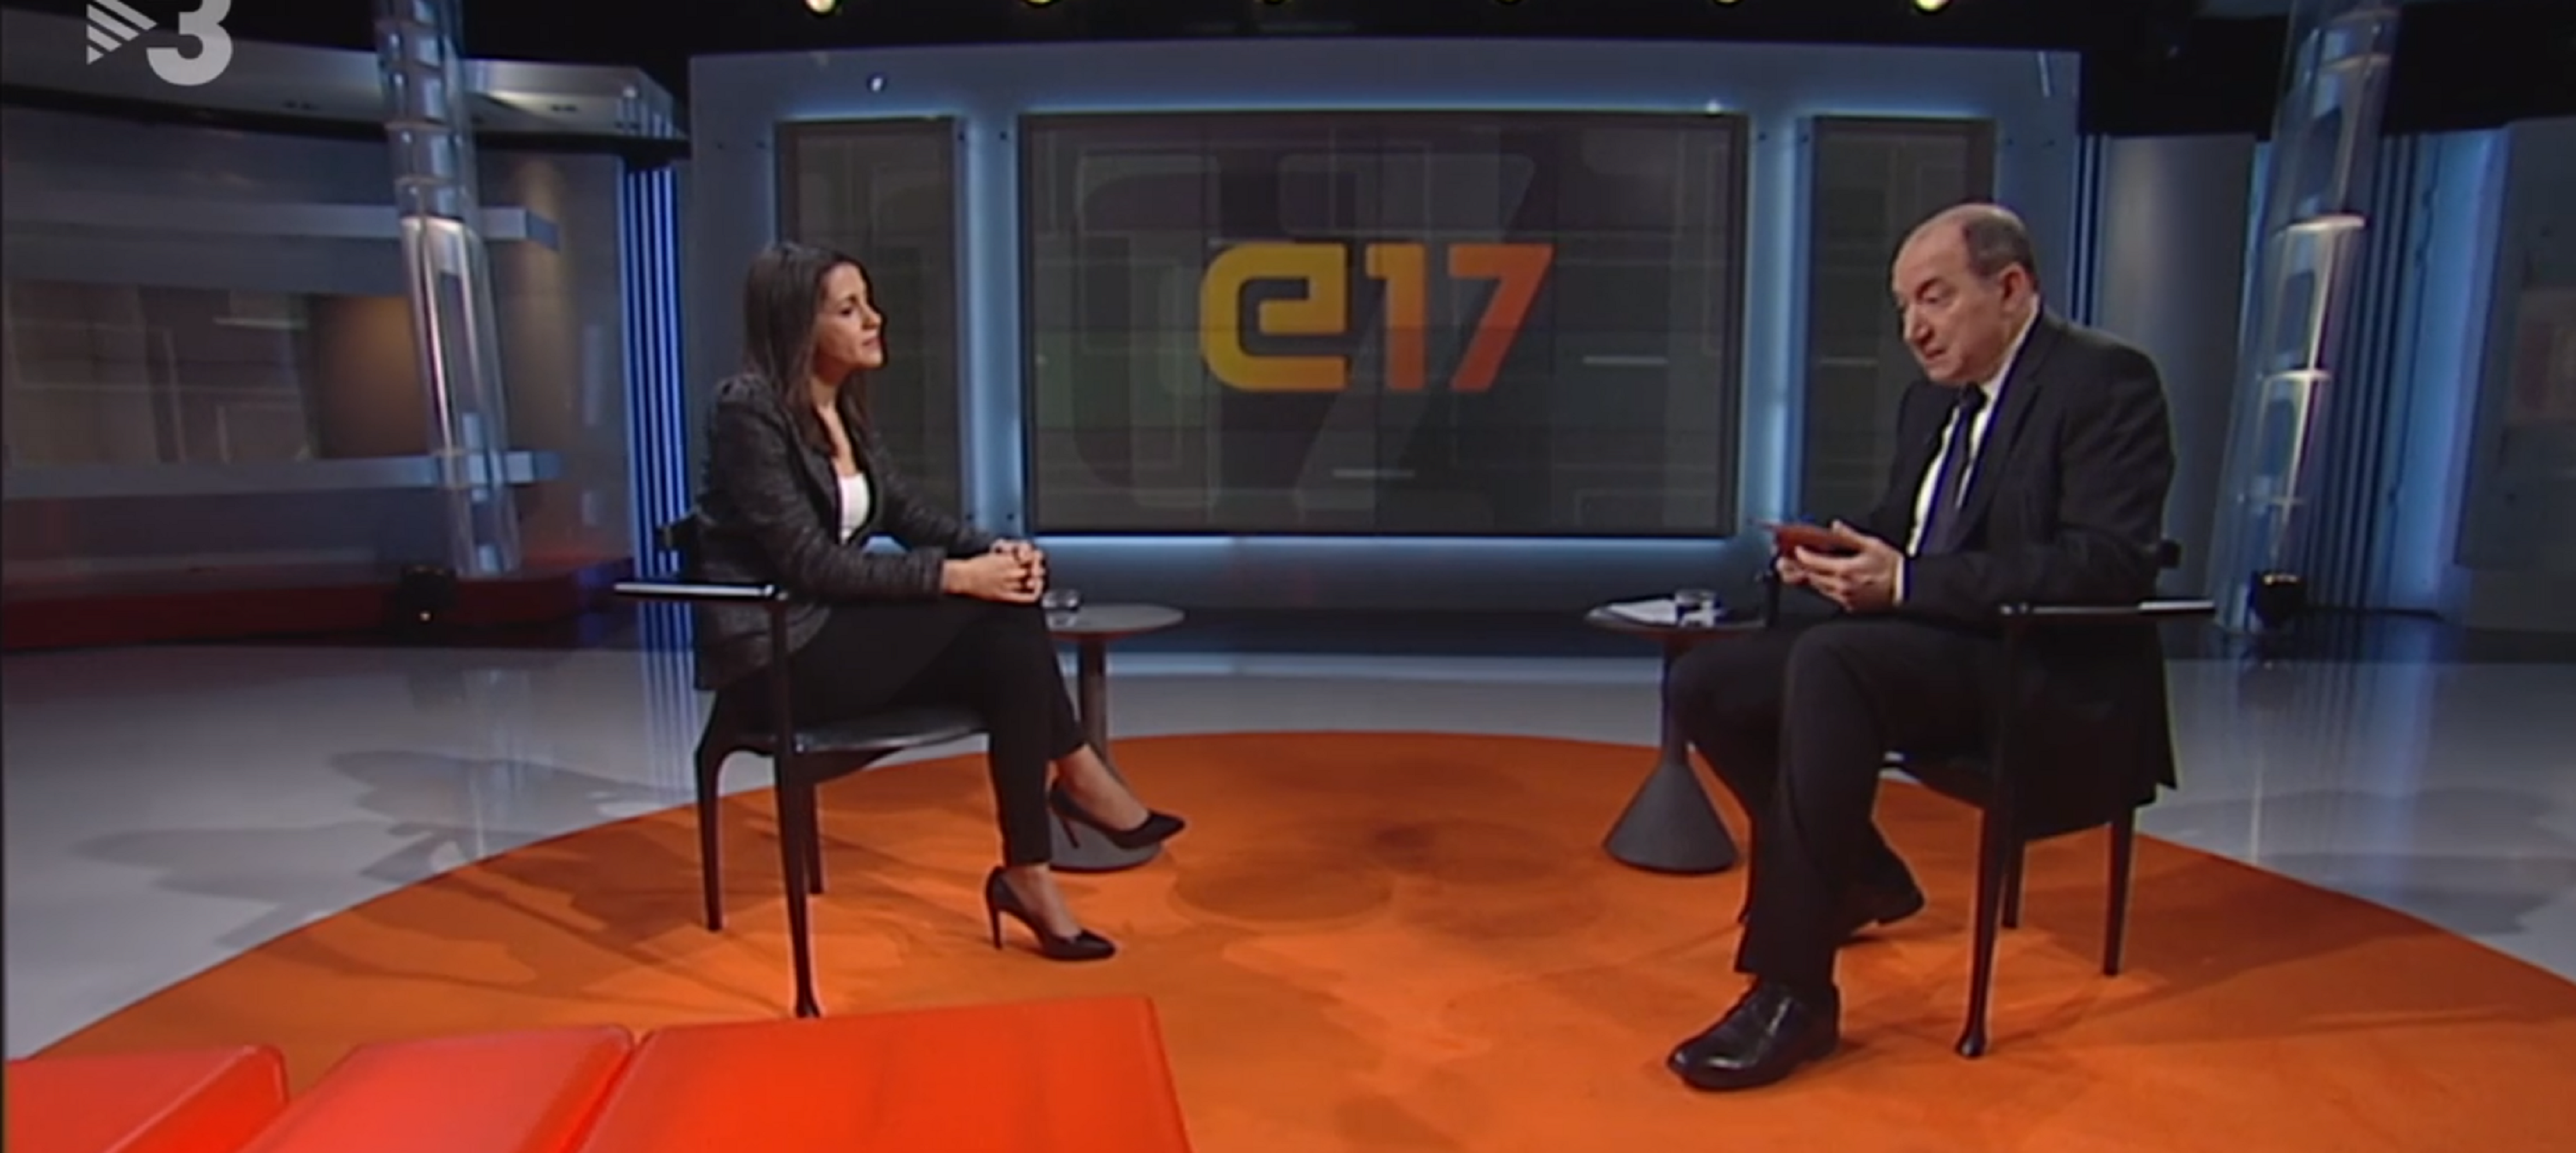 Furibunda reacción a que TV3 entreviste a Inés Arrimadas: "Cambiaré de canal"